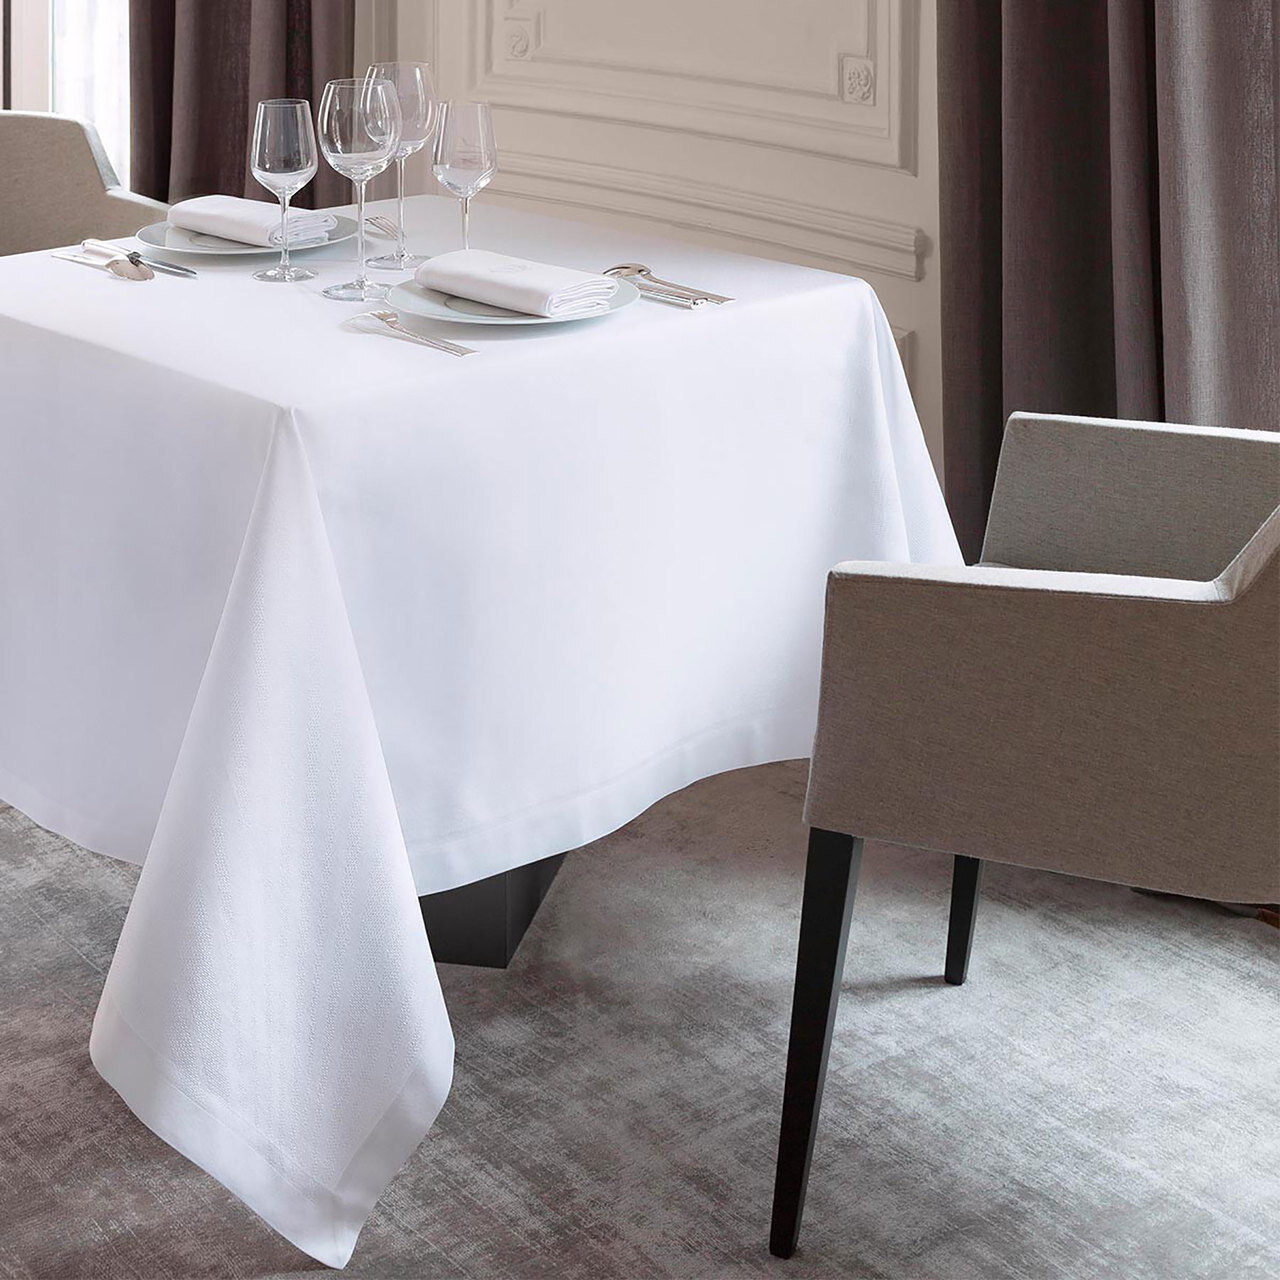 Le Jacquard Offre White Granite Tablecloth 69x98